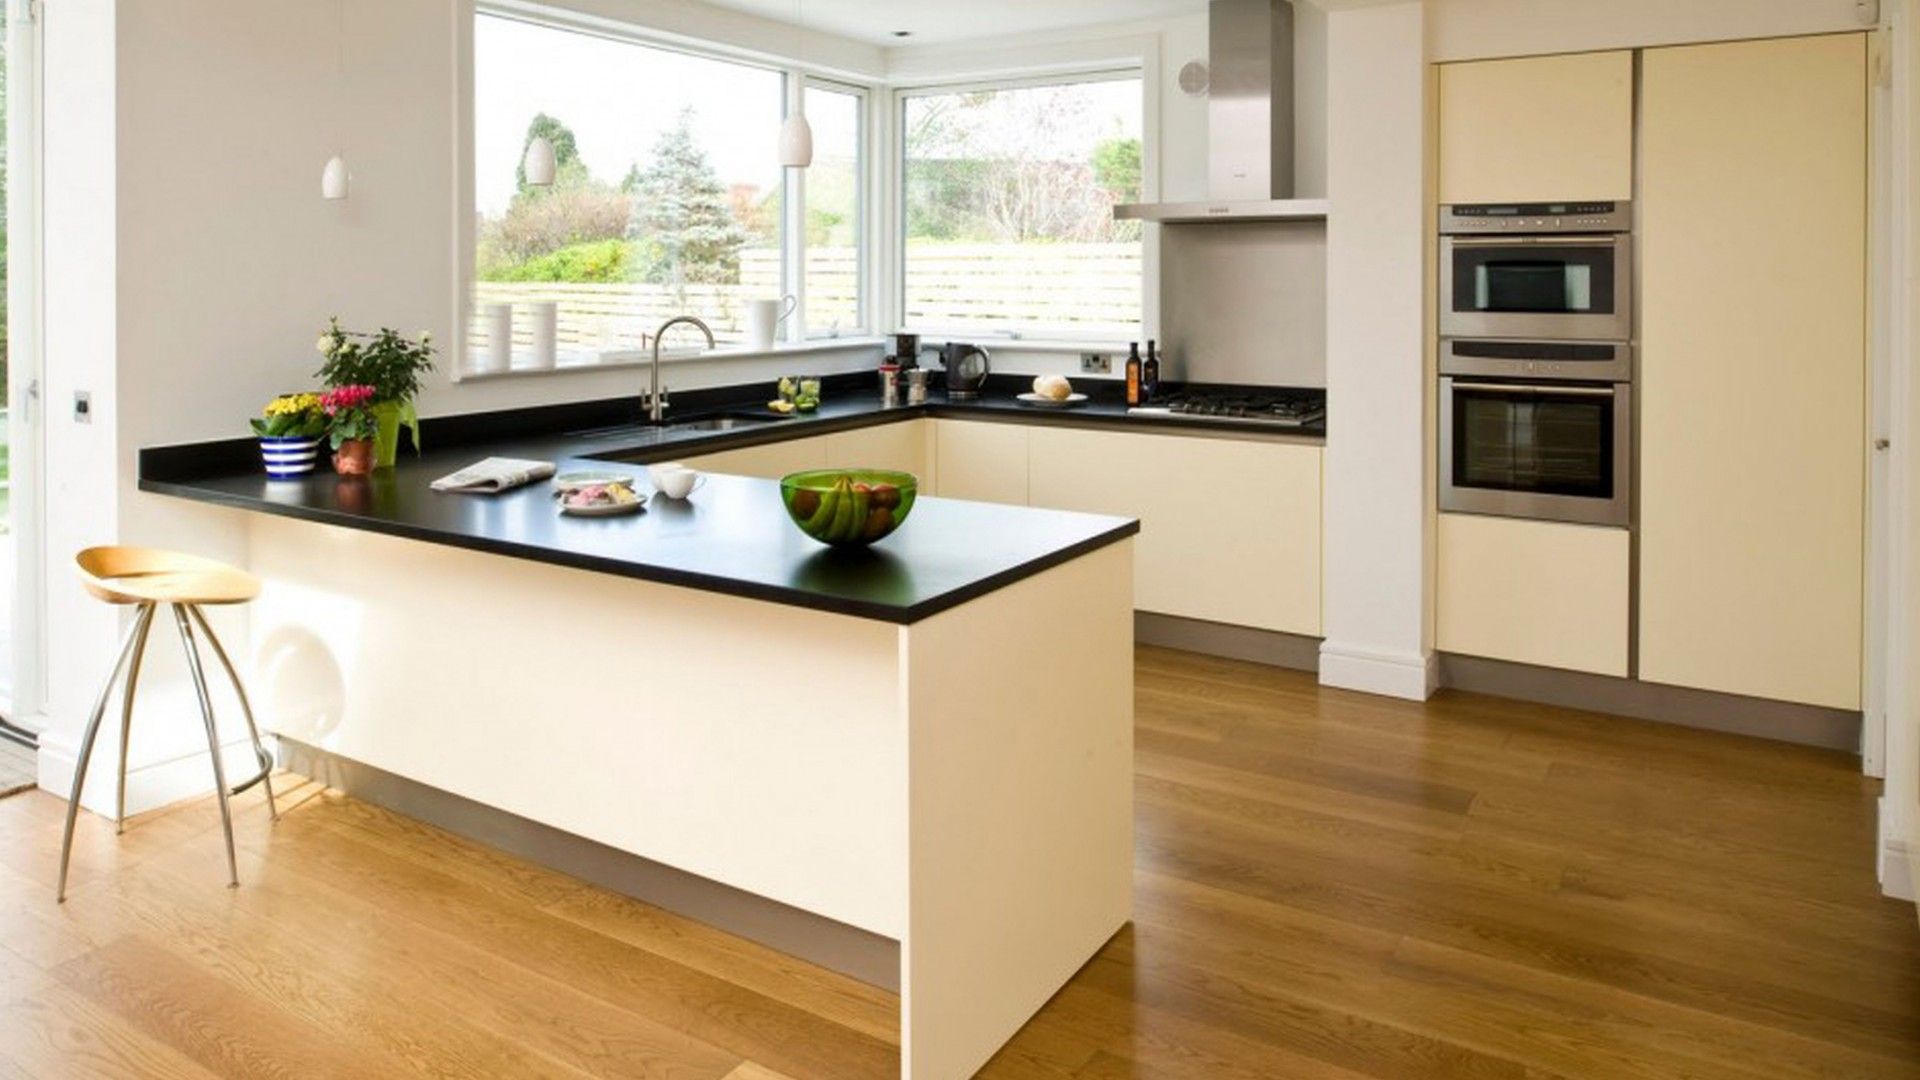  Cocina con suelo de madera decorada al estilo minimalista